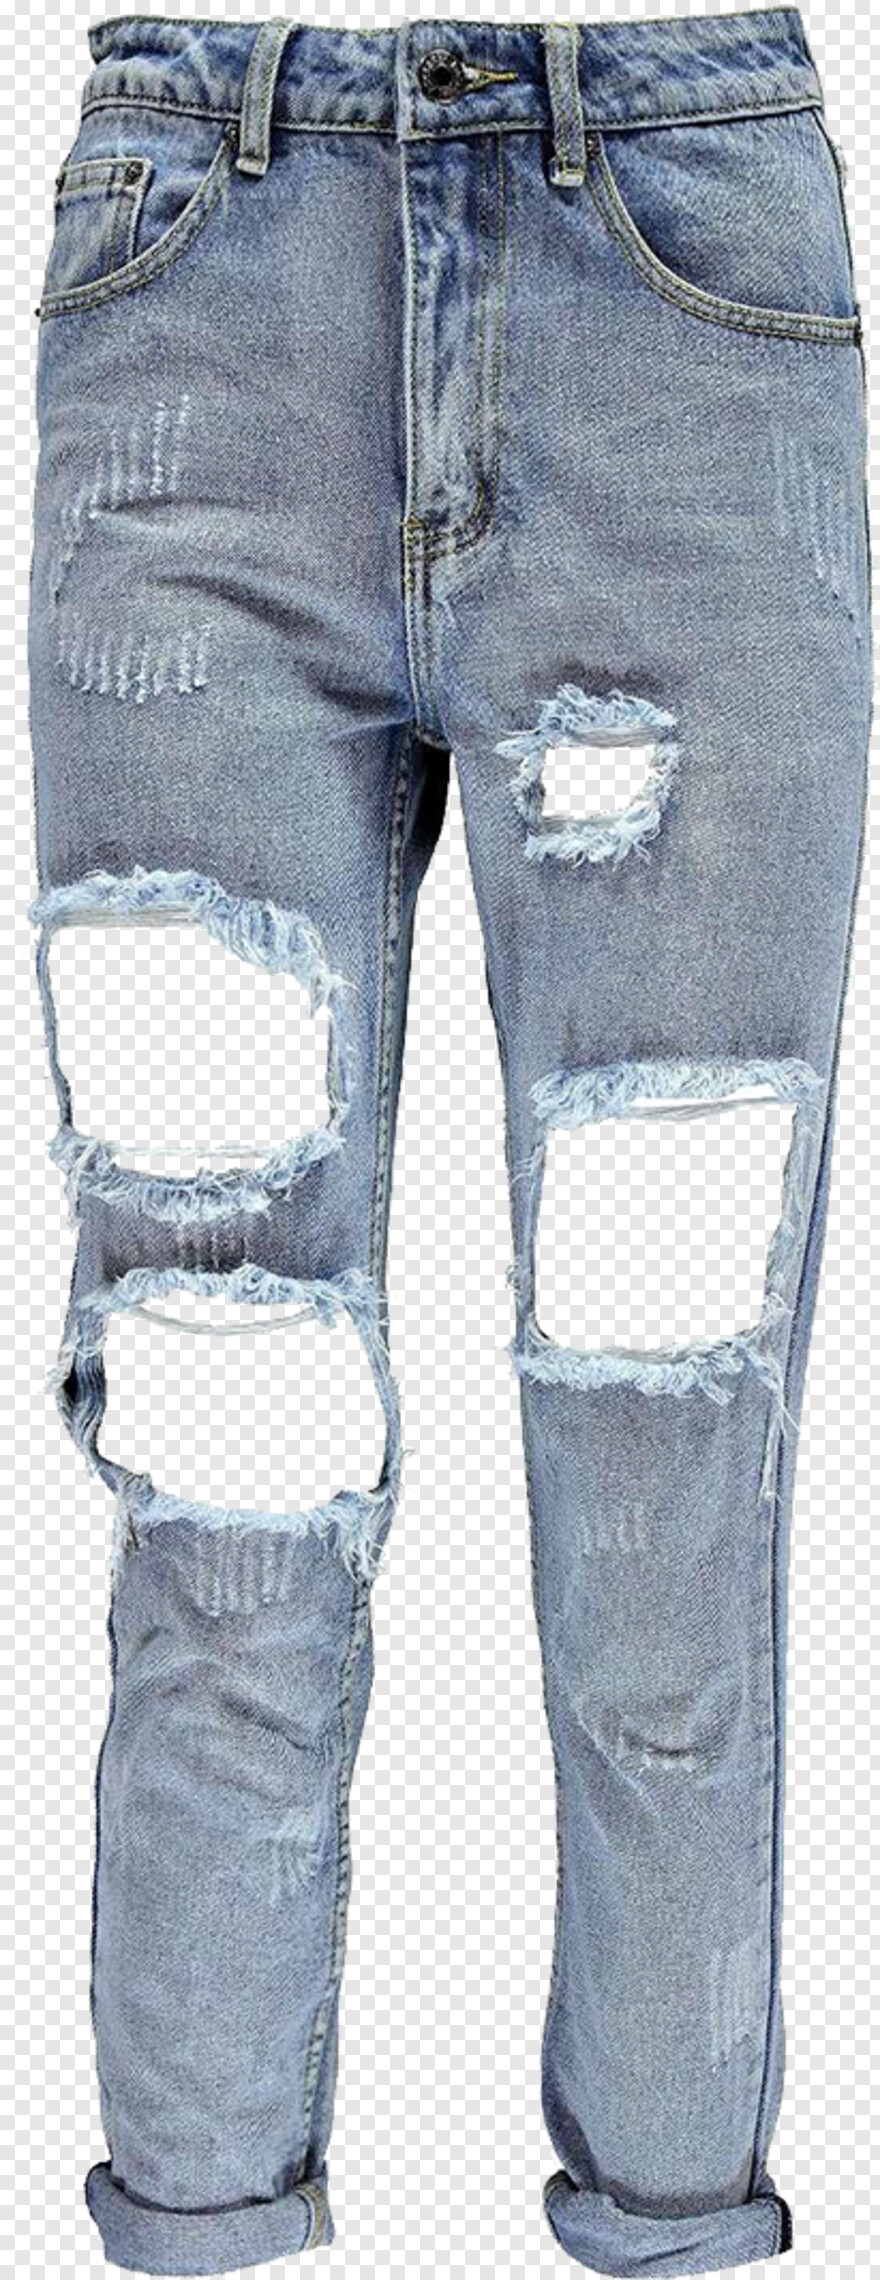 jeans-pant # 582953